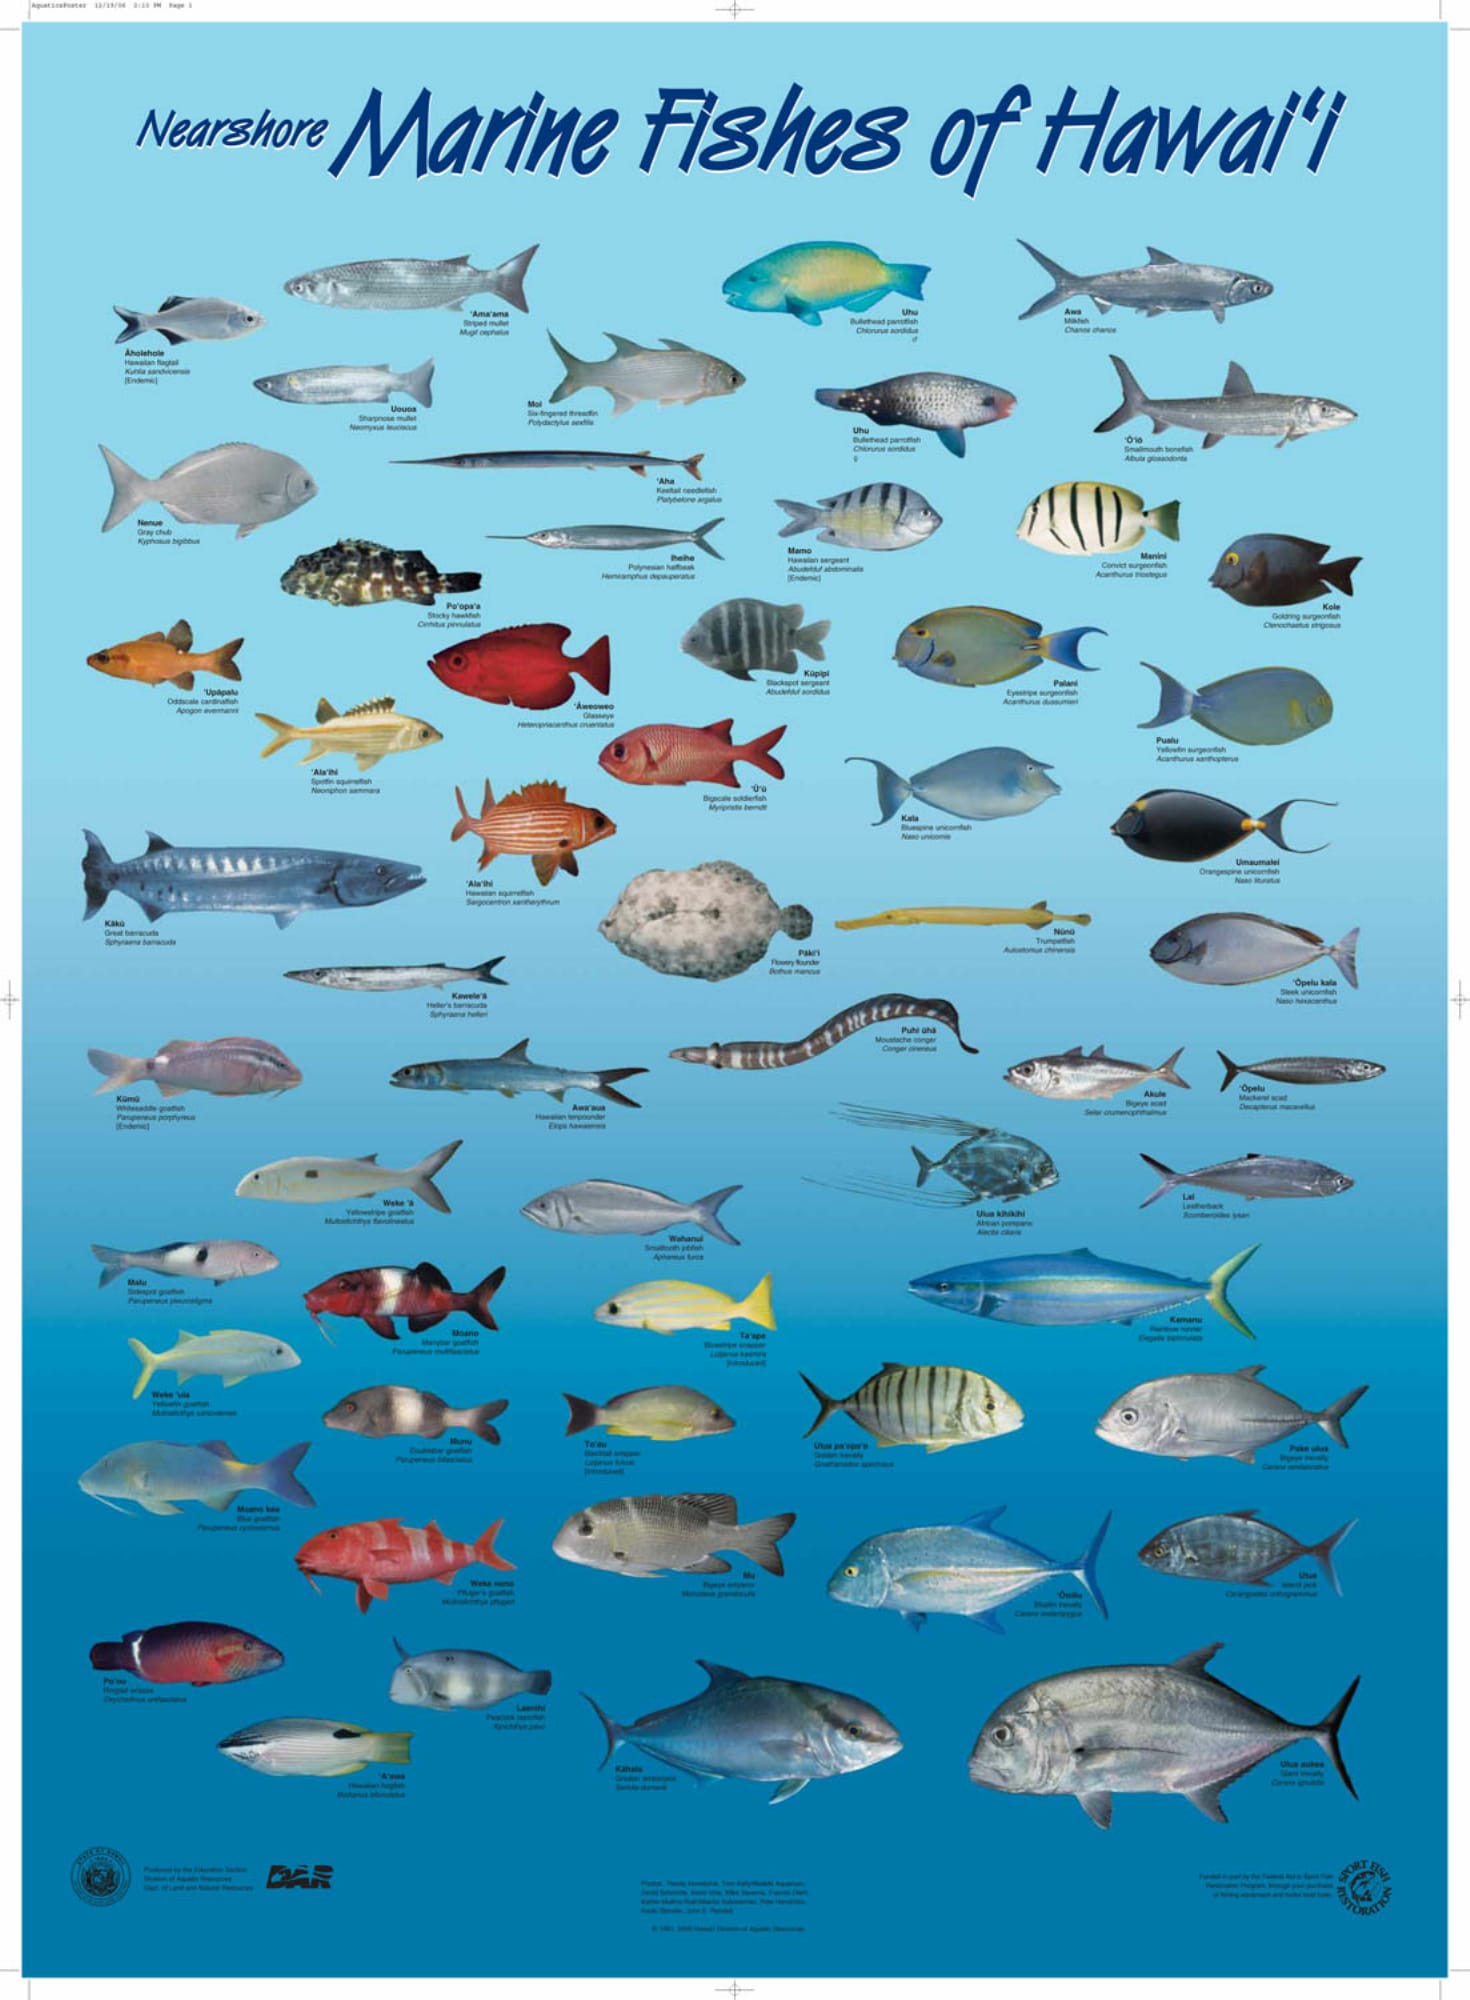 Hawaii Marlin Fishing - Hawaiian Species (All)